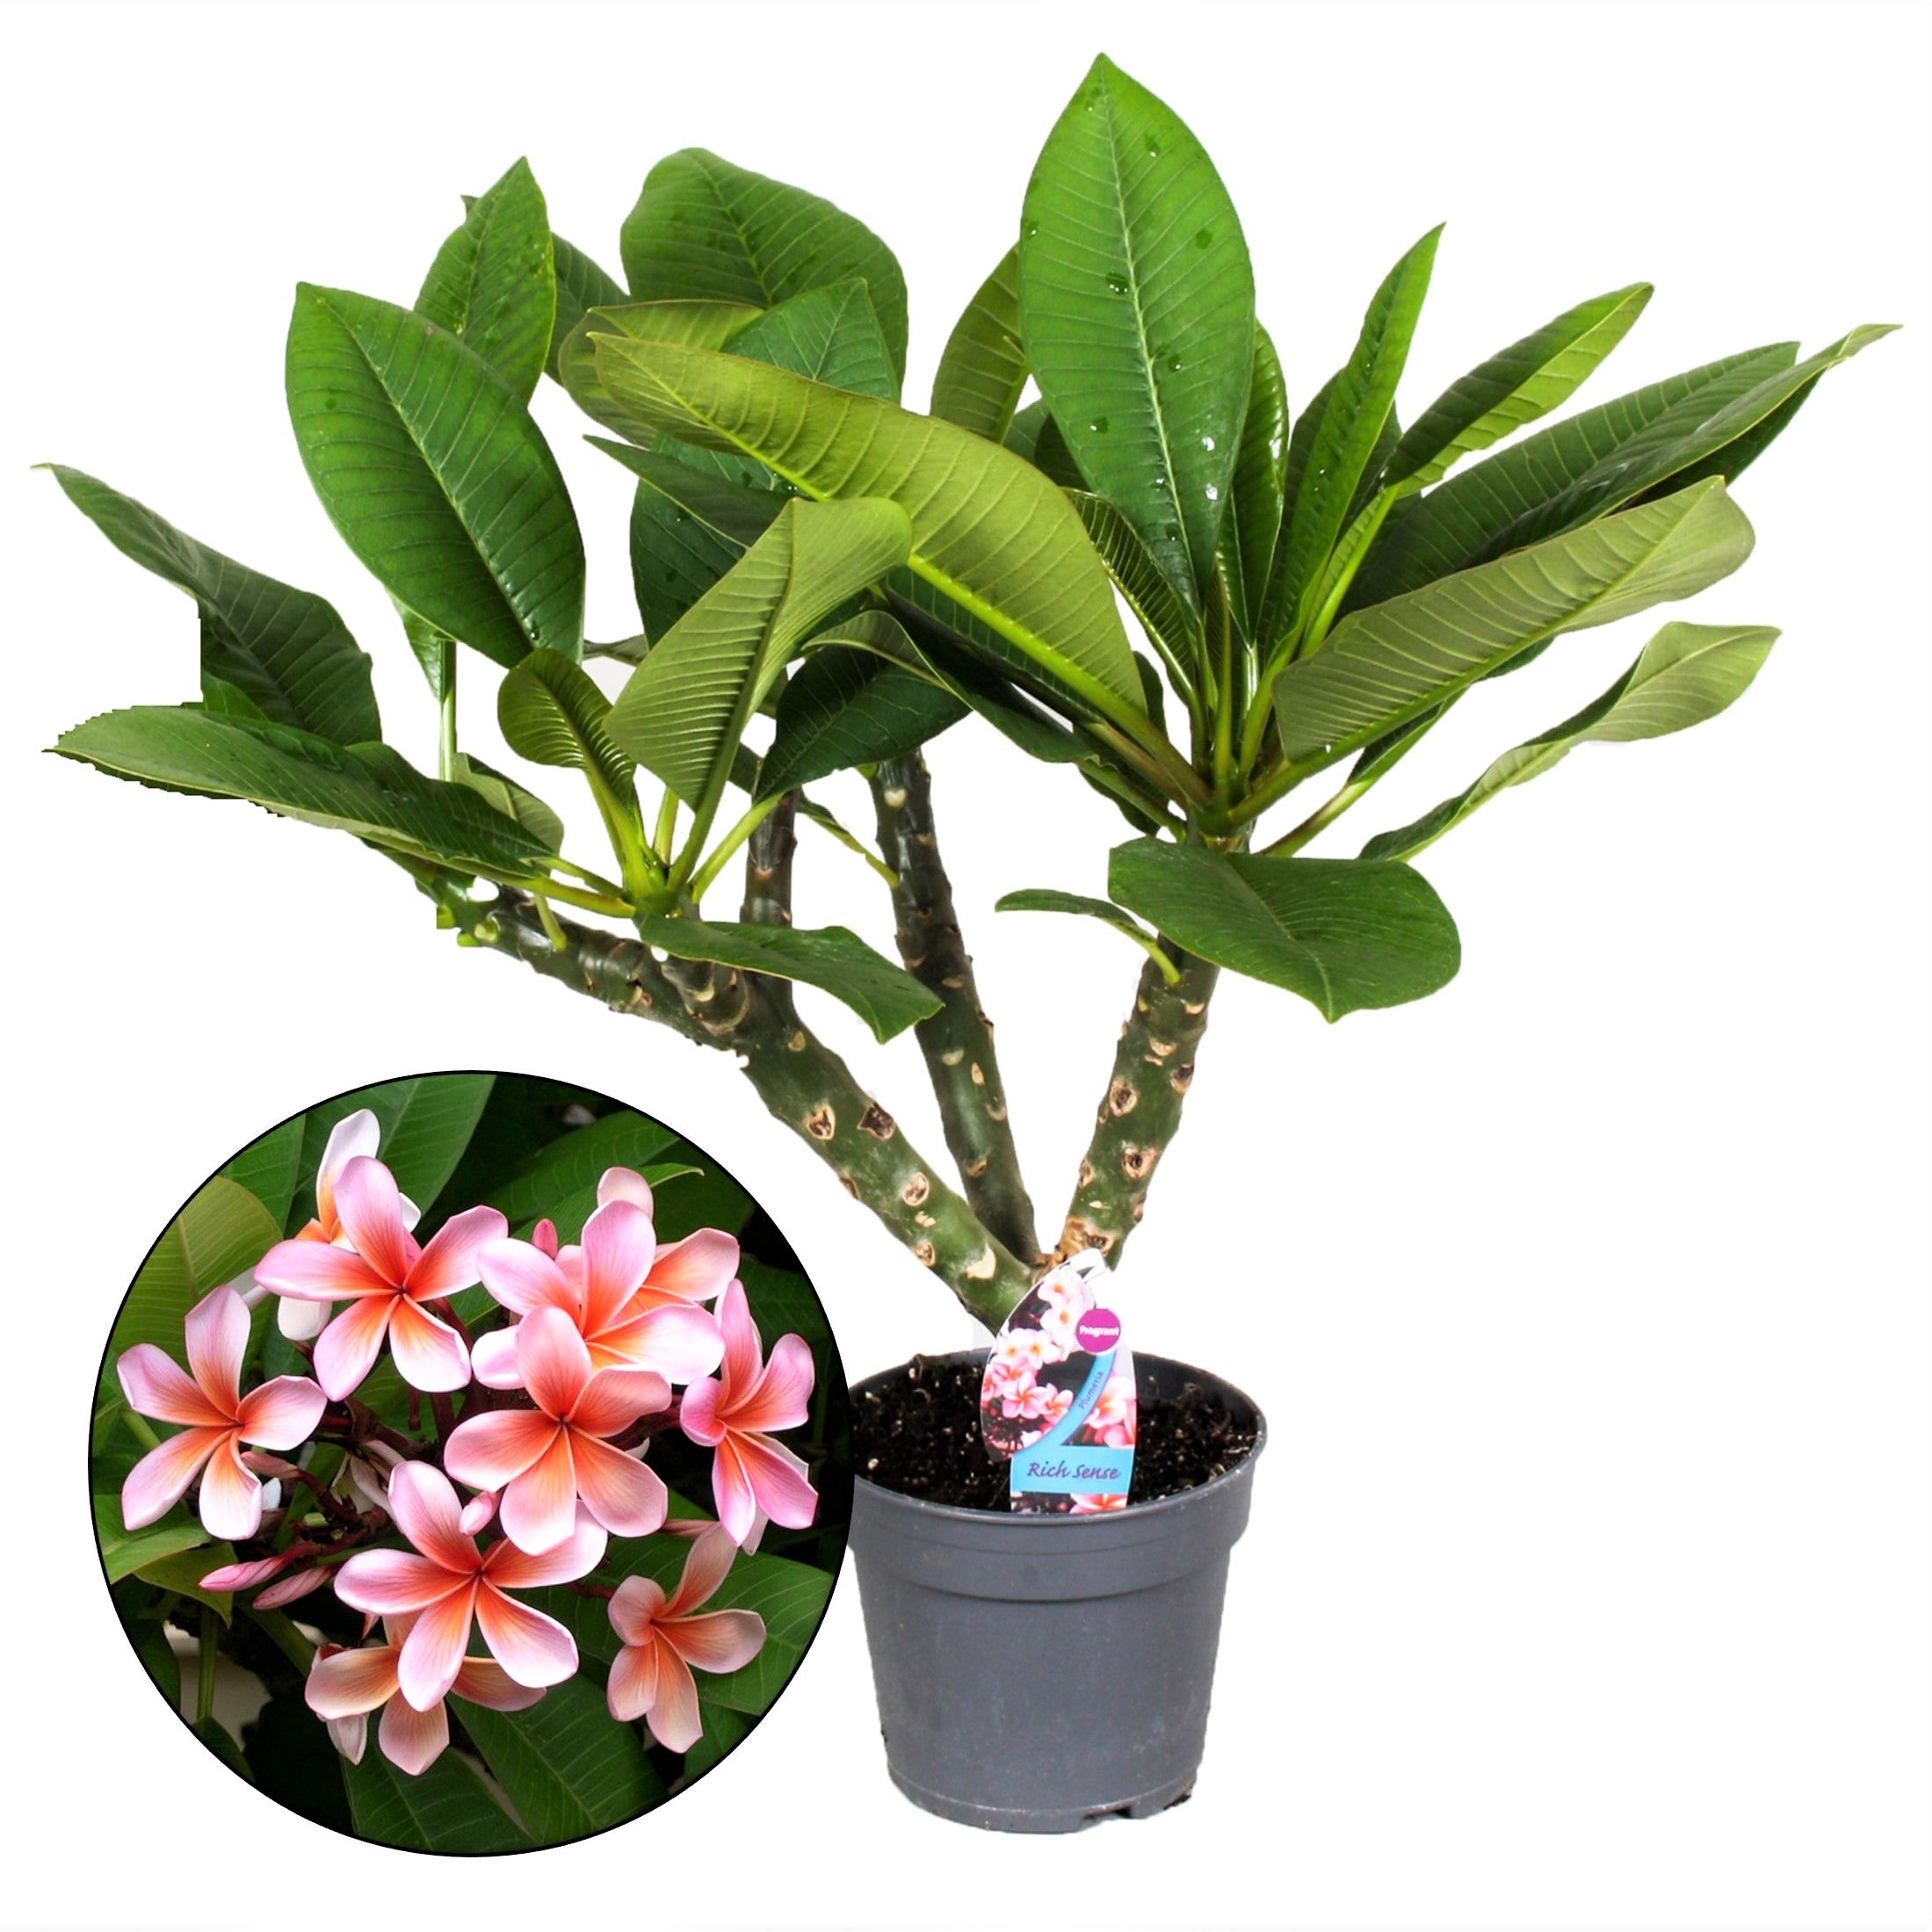 Plant in a Box - Plumeria Frangipani Hawaii - Plante verte interieur  vivante fleur - Frangipanier plante exotiques - Pot 17cm - Hauteur 55-70cm  | Leroy Merlin